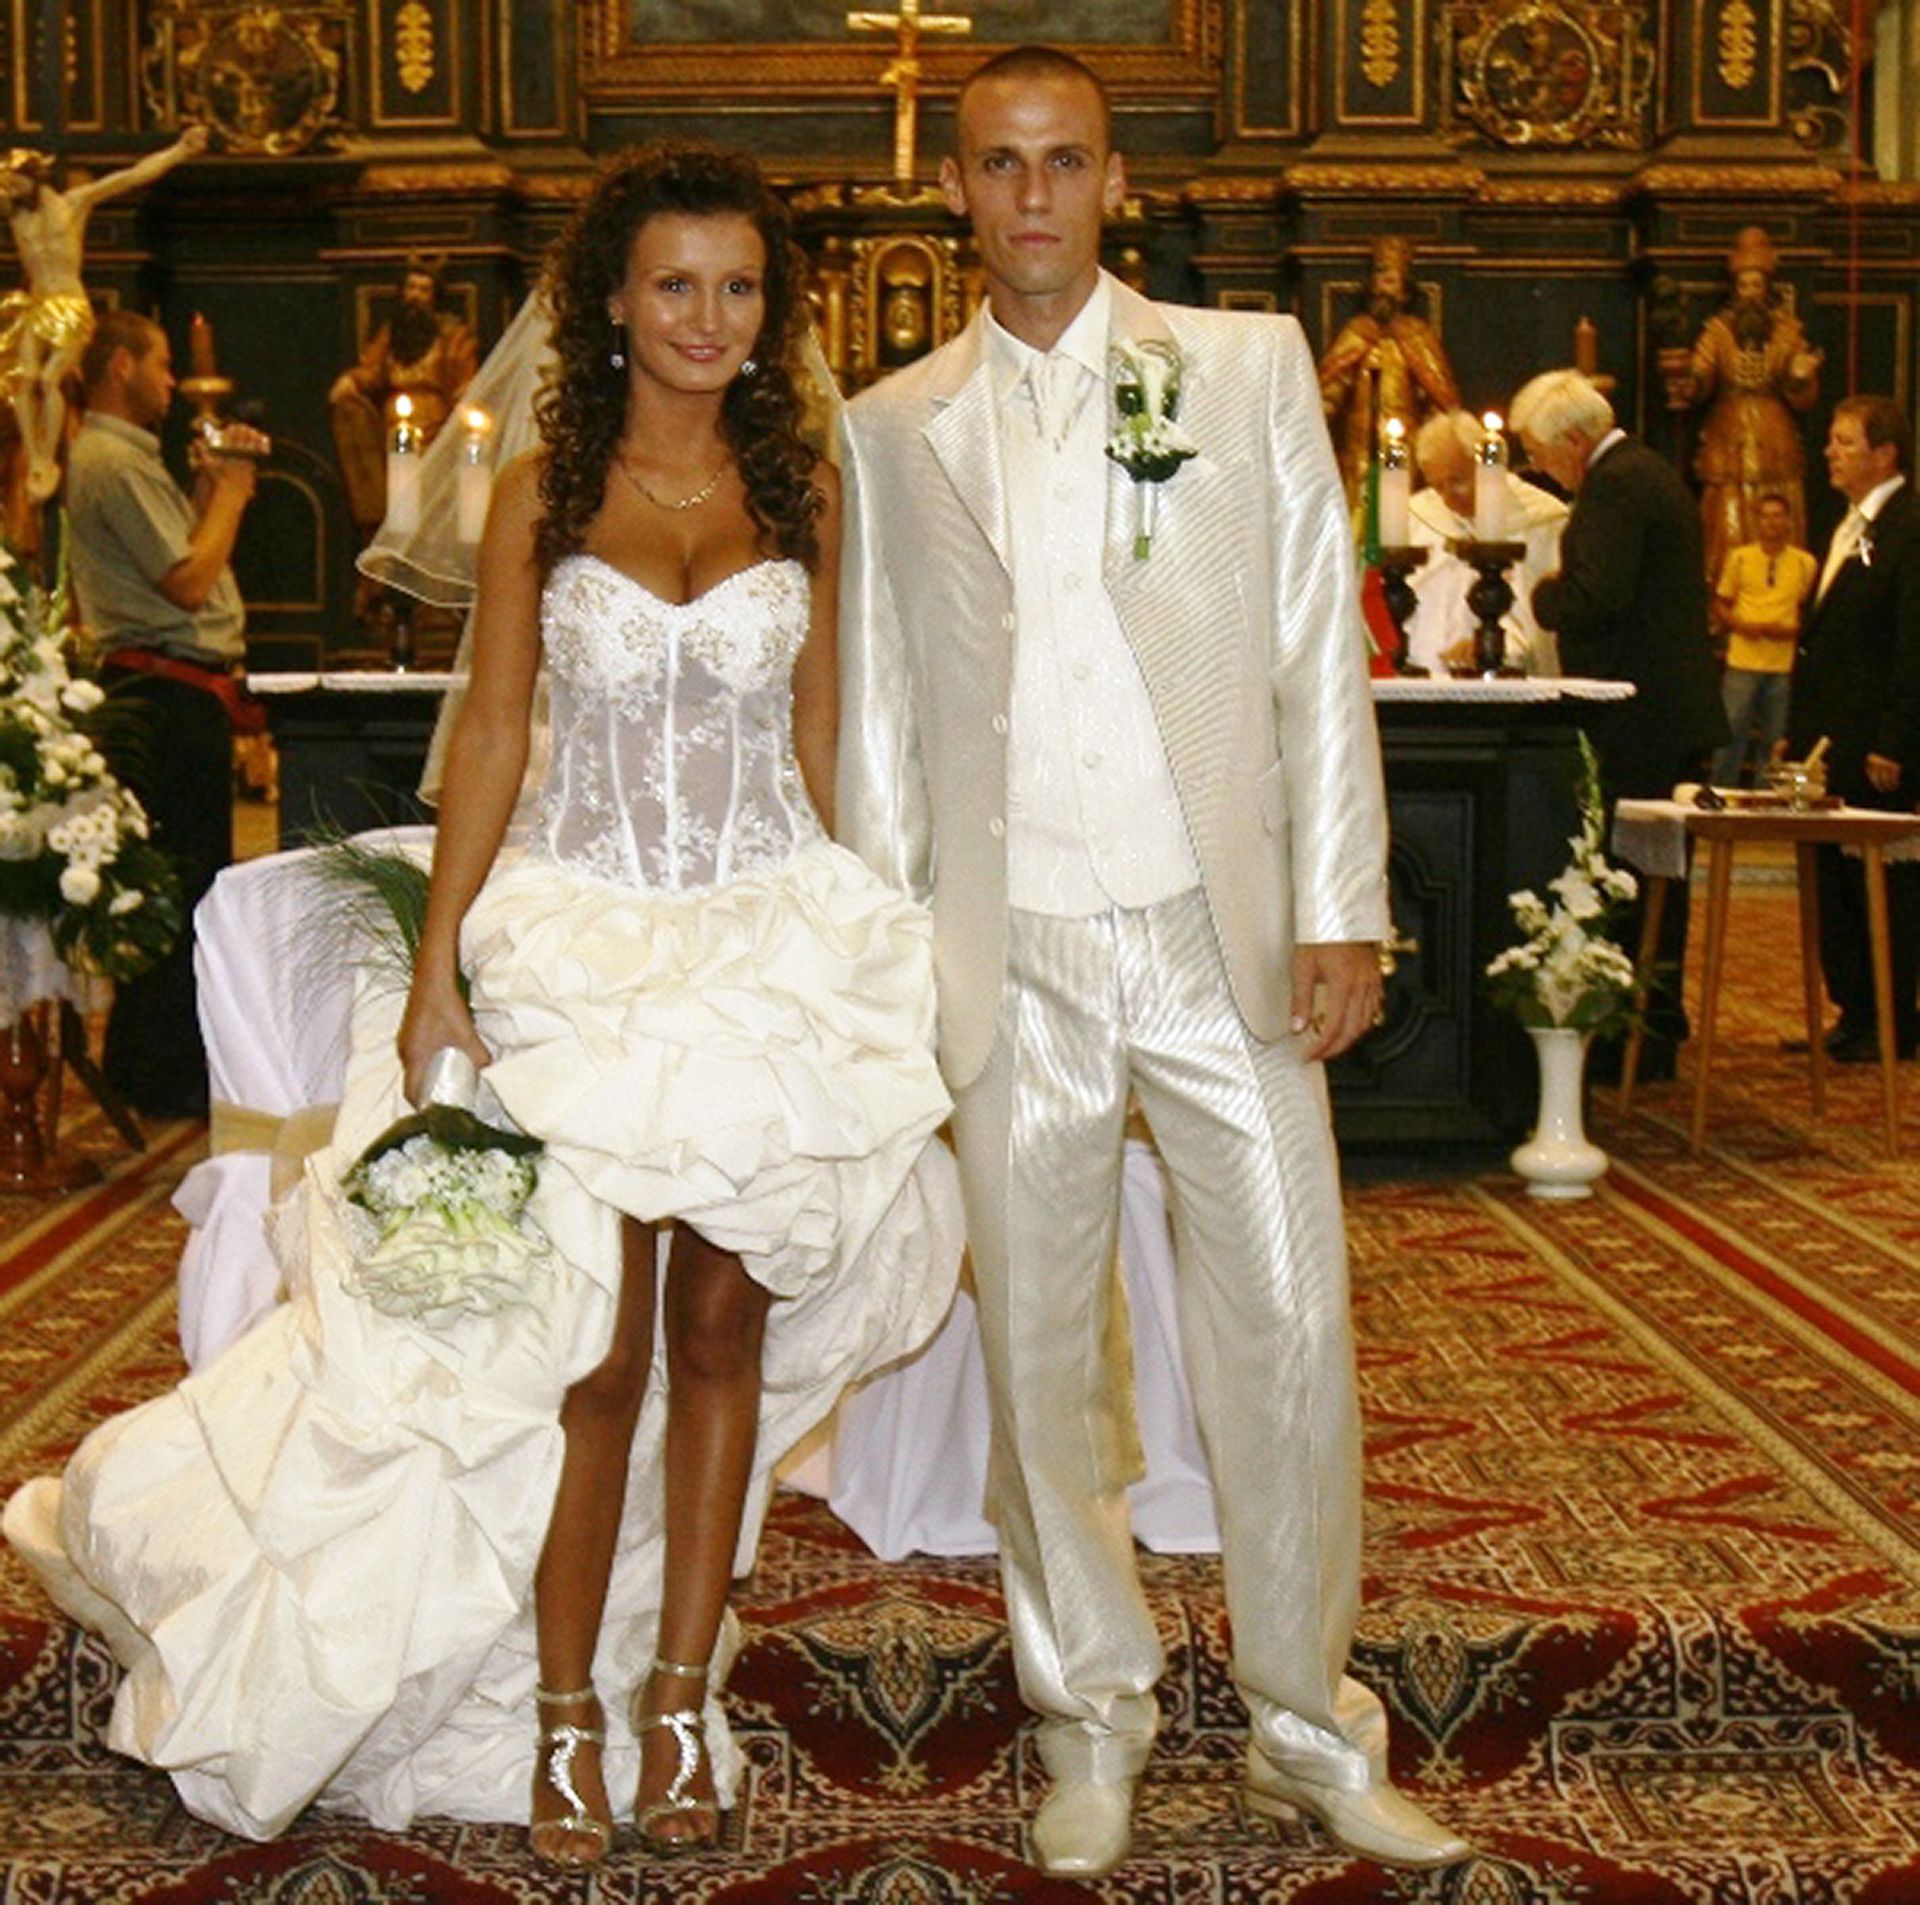 Kamil Kopúnek 2010-ben vette el feleségül párját, Dominikát, 2011-ben született meg a gyermekük, Marcus Fotó: Juraj Velicka/NMH